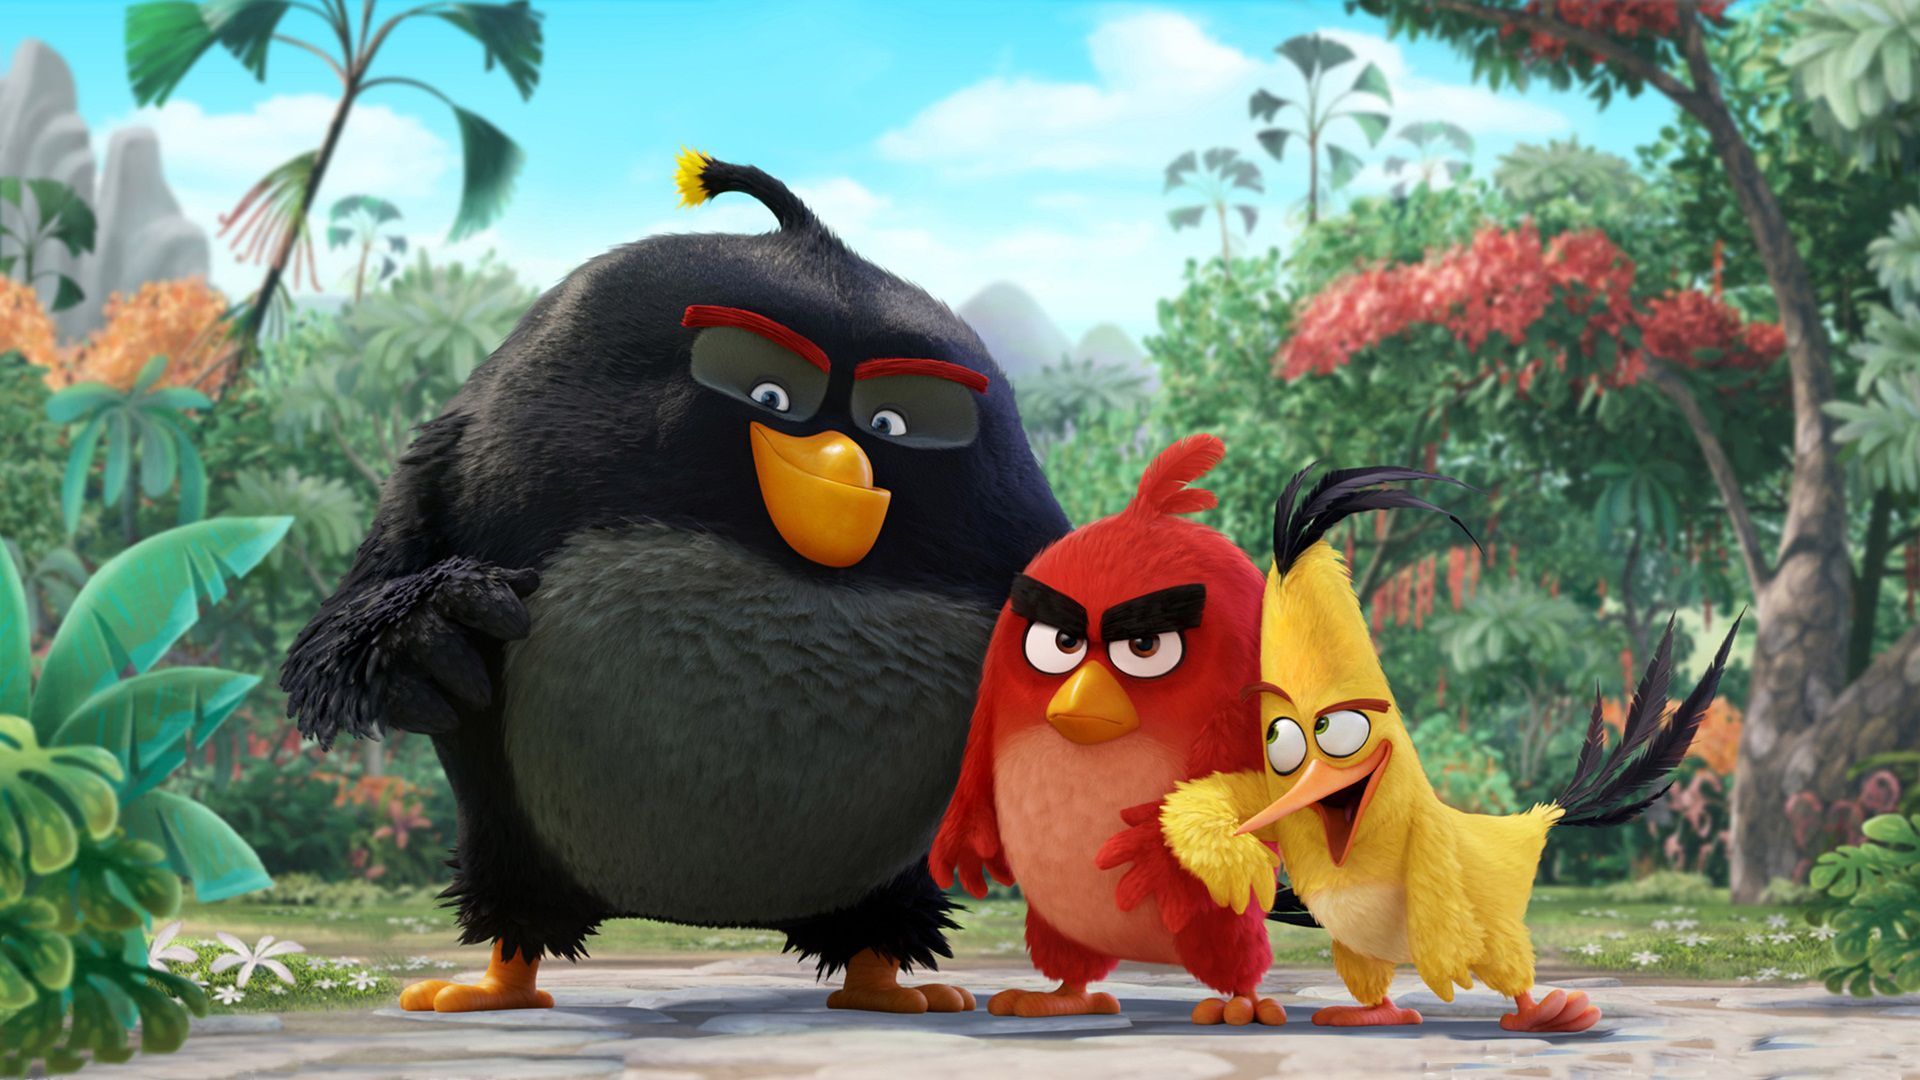 Gli uccelli di Angry Birds, ambasciatori onorari dell’Onu per l’Ambiente